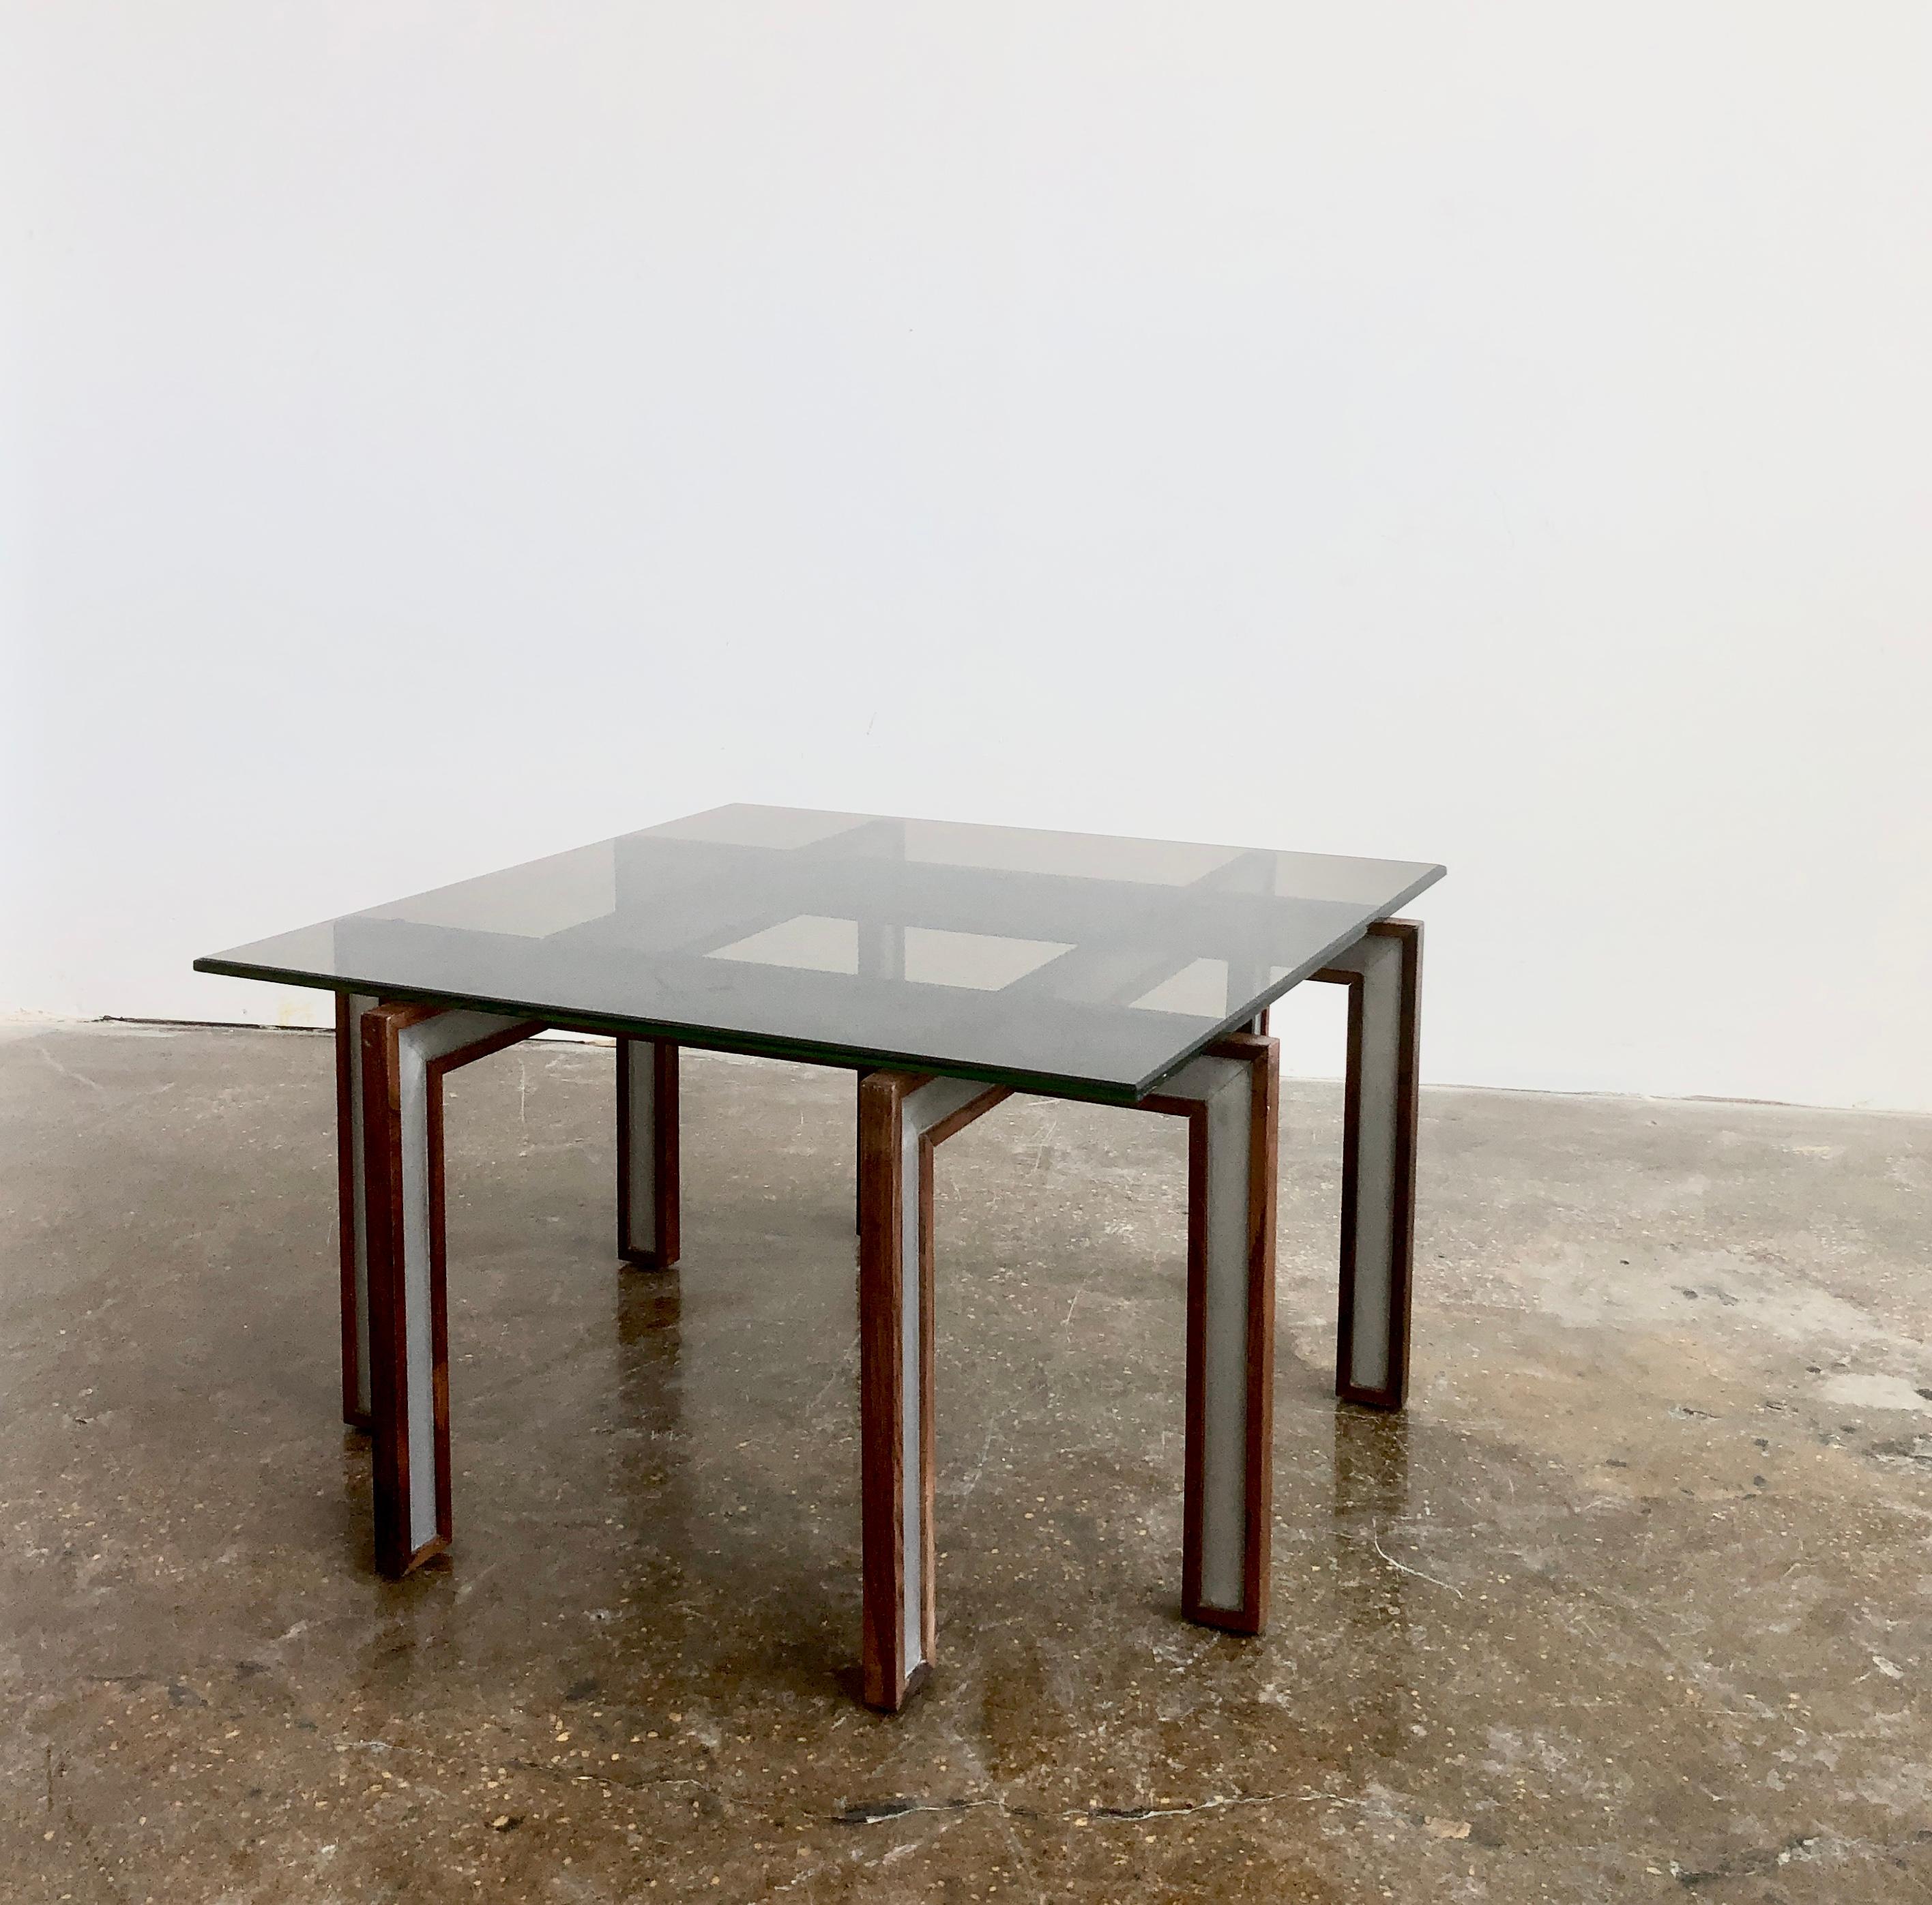 Table basse en bois de rose et métal avec plateau en verre fumé. Conçu par Henning Korch, fabriqué par C.F.C. Silkeborg. Le Danemark.
Quelques décolorations sur le bord supérieur du verre.